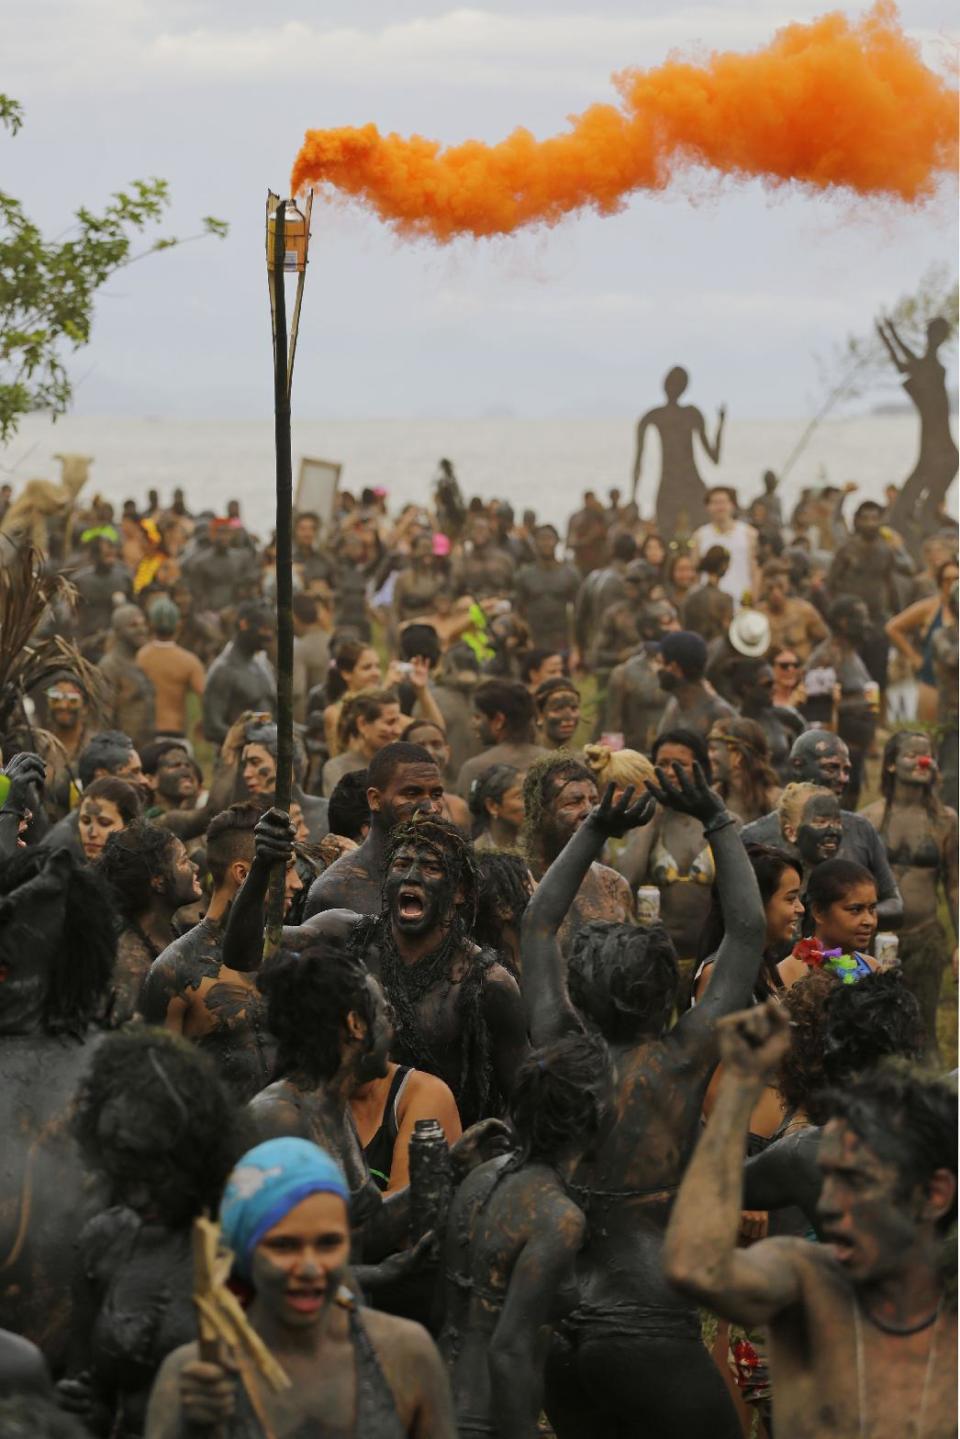 Miles de personas cubiertas de lodo bailan durante la fiesta callejera "Bloco da Lama" en Paraty, Brasil, el sábado 1 de marzo de 2014. (Foto AP/Nelson Antoine)